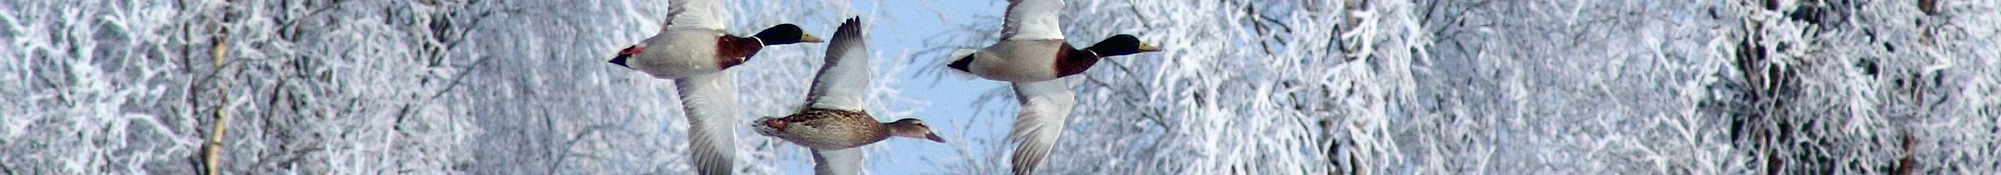 duck winter scene